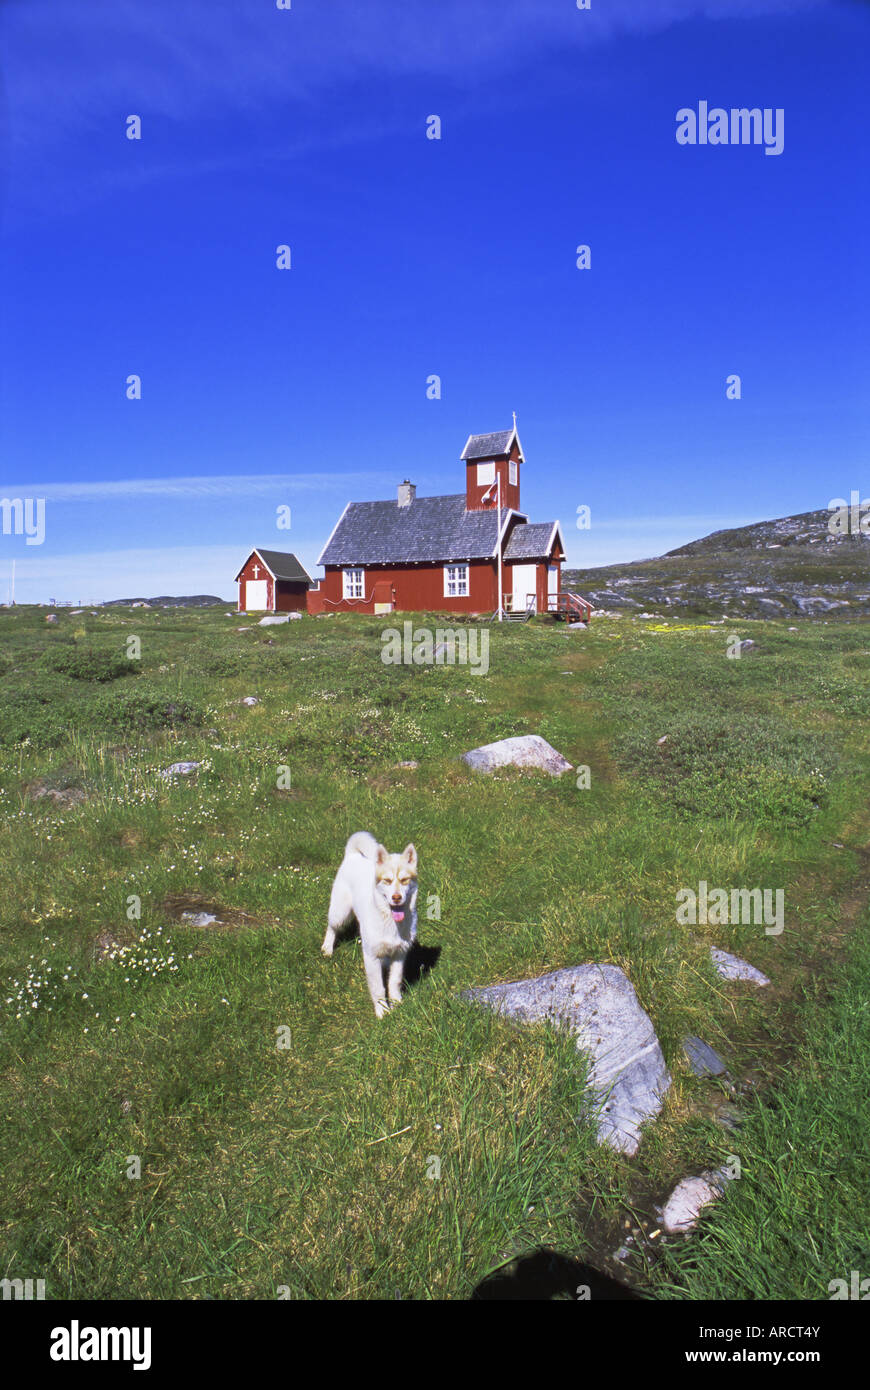 Insediamento di Ilimanaq, precedentemente Claushavn, Groenlandia, regioni polari Foto Stock